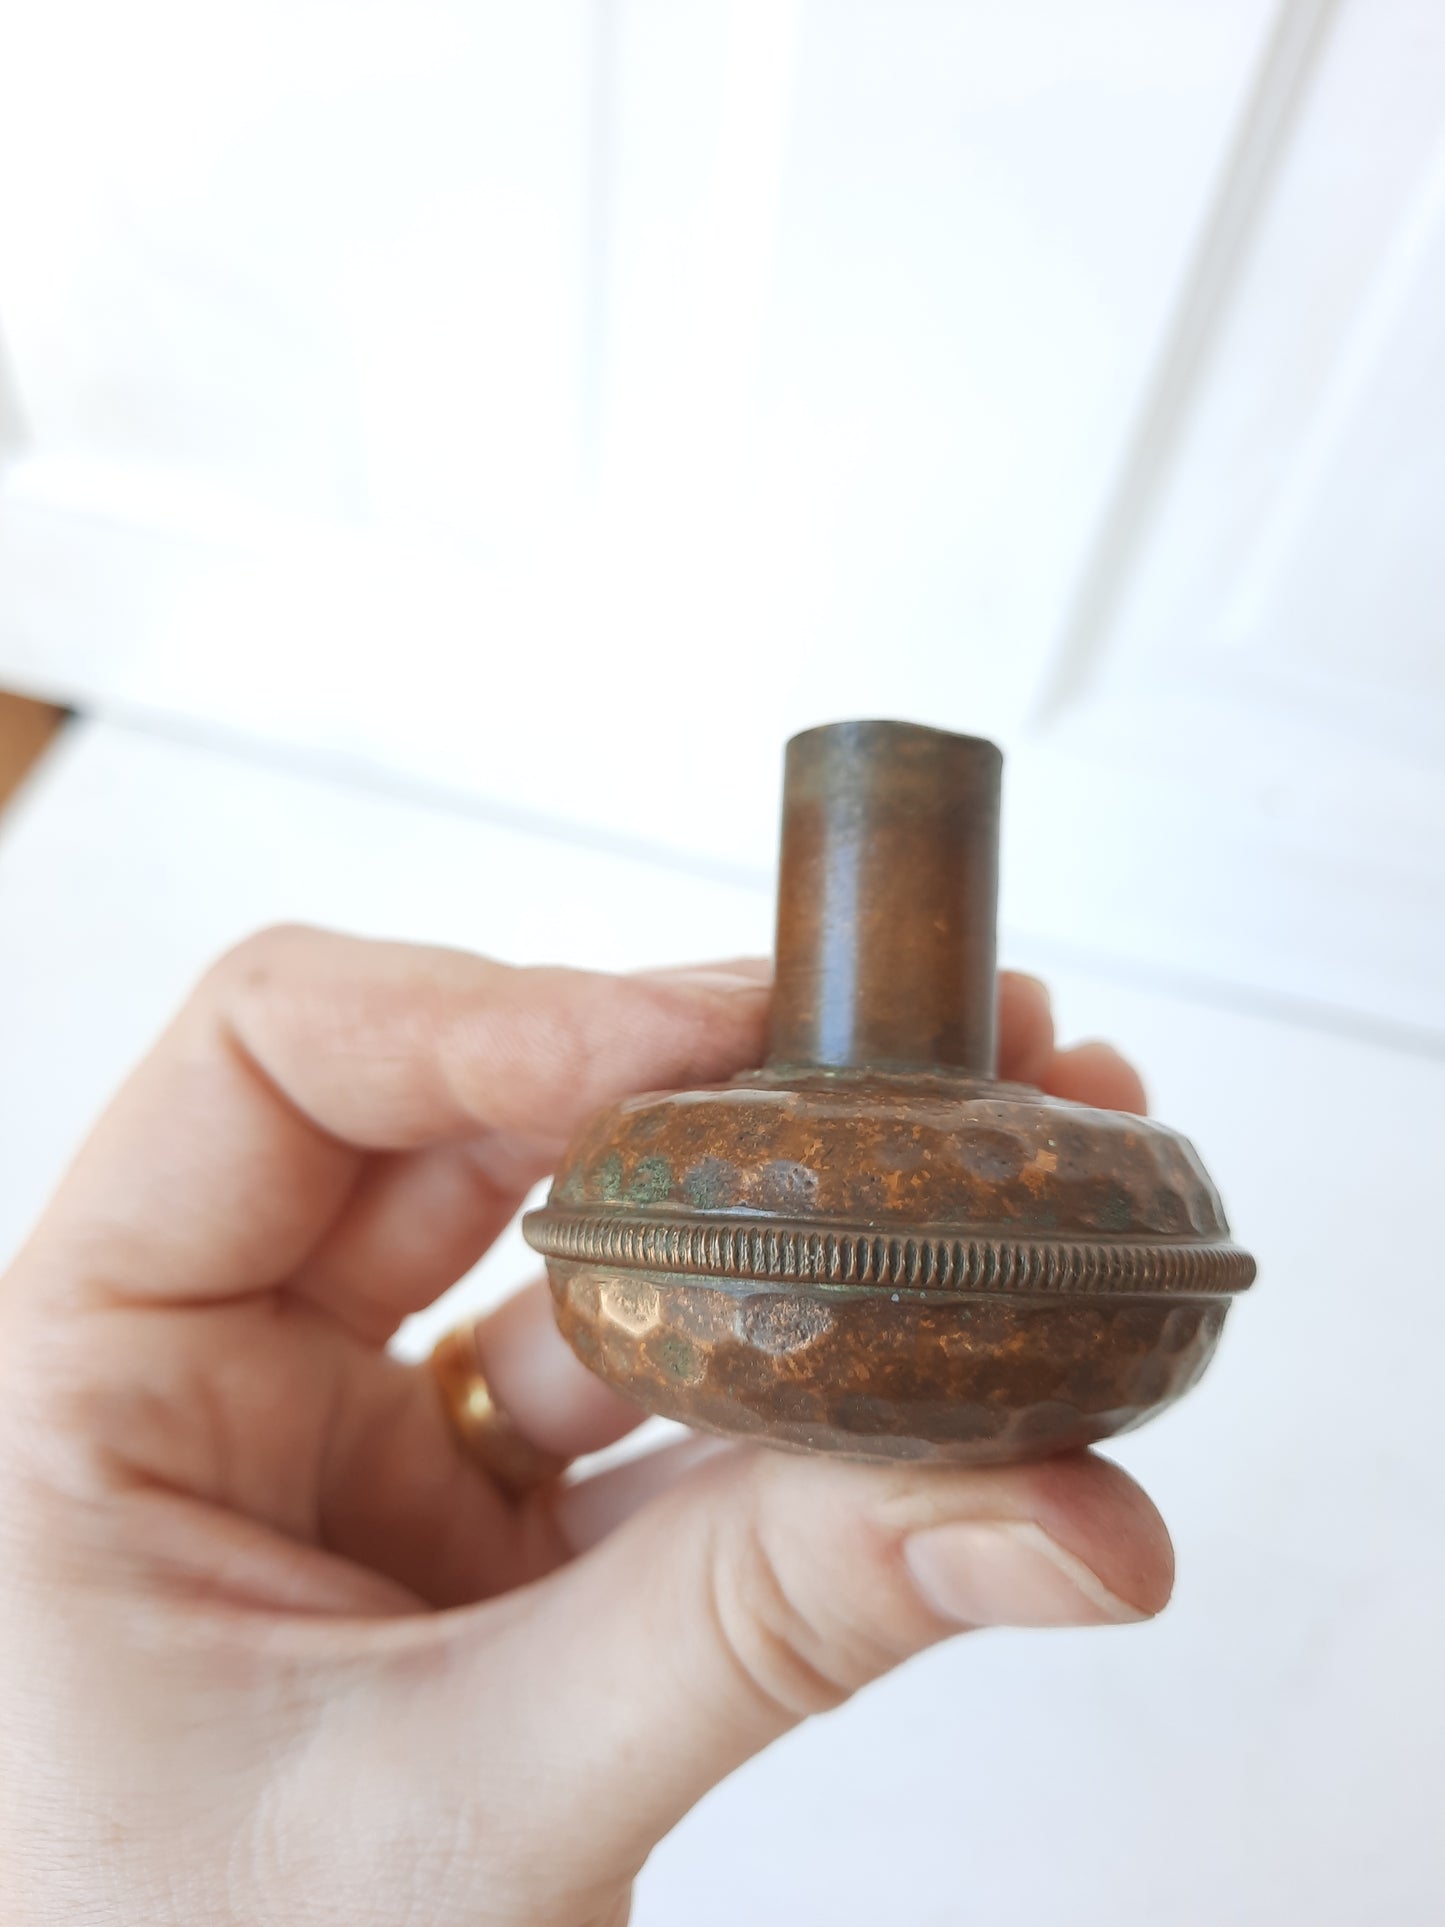 Small Solid Bronze Doorknob with Hammered Texture, Small Size Antique Door Knob Victorian Era, 083114